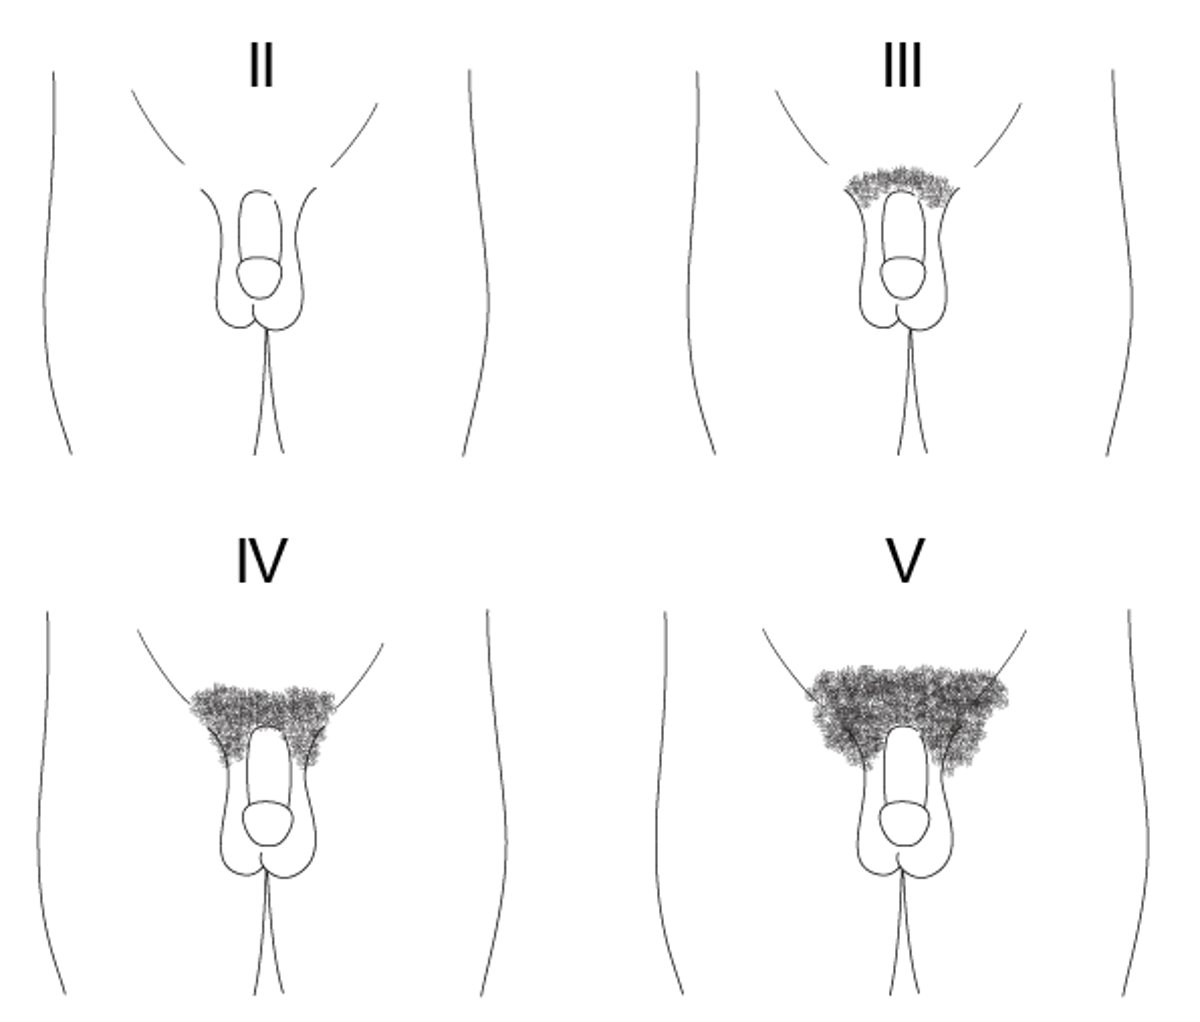 Biểu đồ mô tả các giai đoạn của Tanner từ giai đoạn II đến V ứng với sự phát triển của lông mu ở các bé gái.